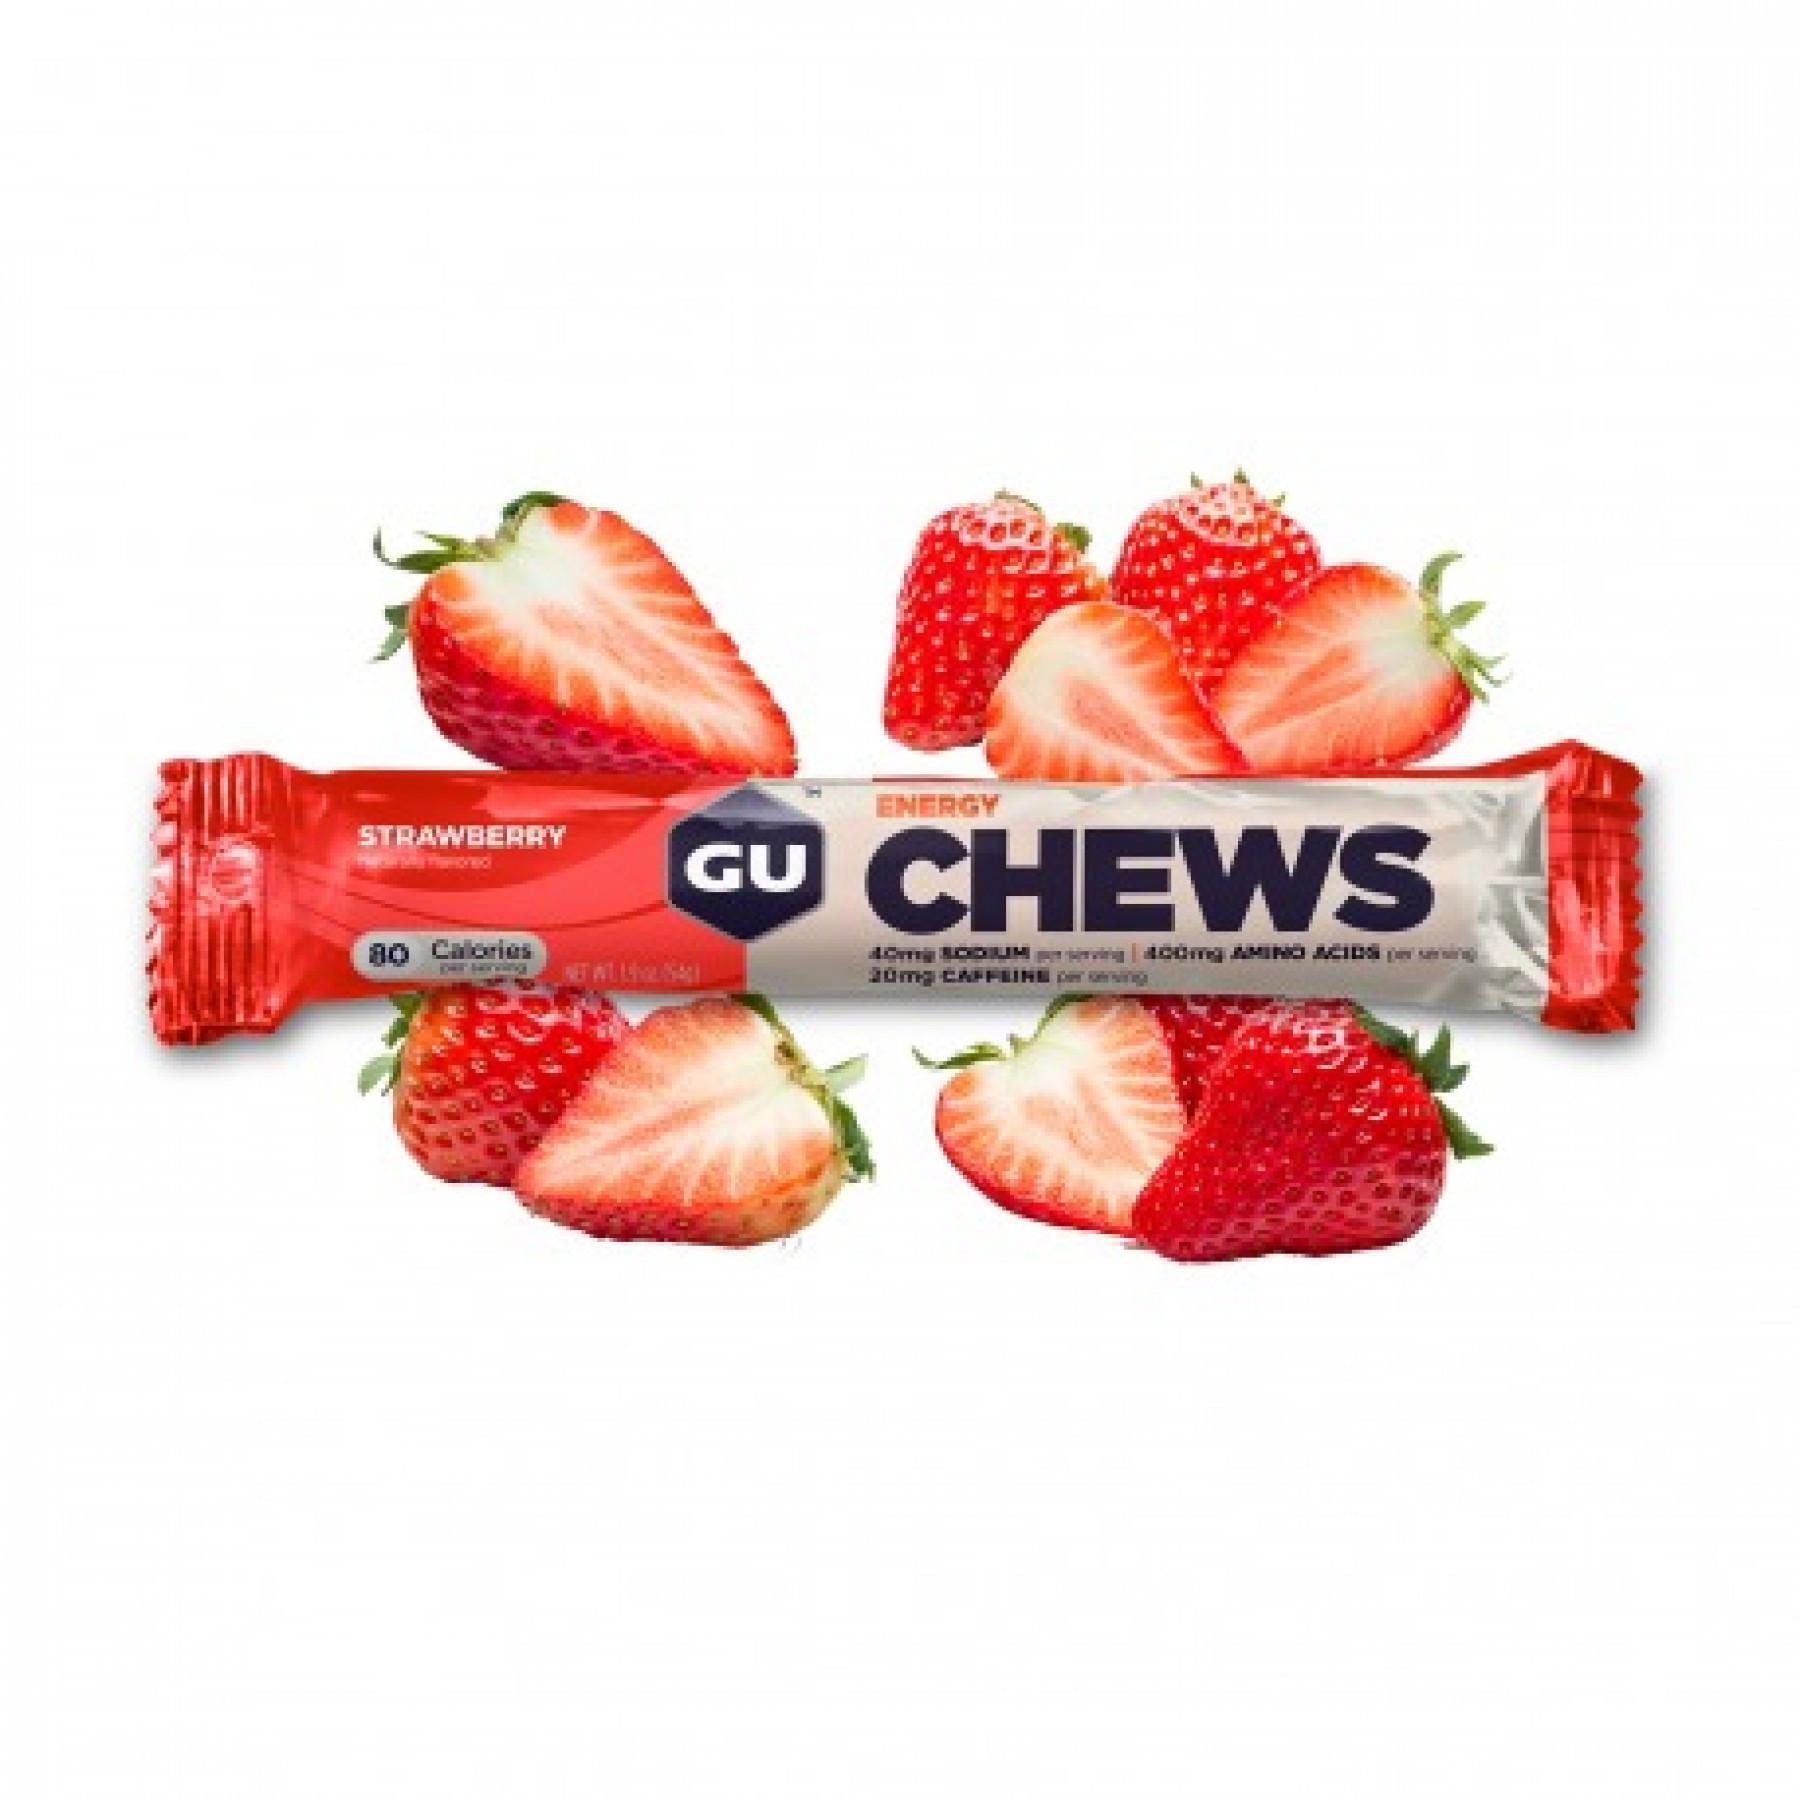 8 tuggummi Gu Energy fraise (x18)